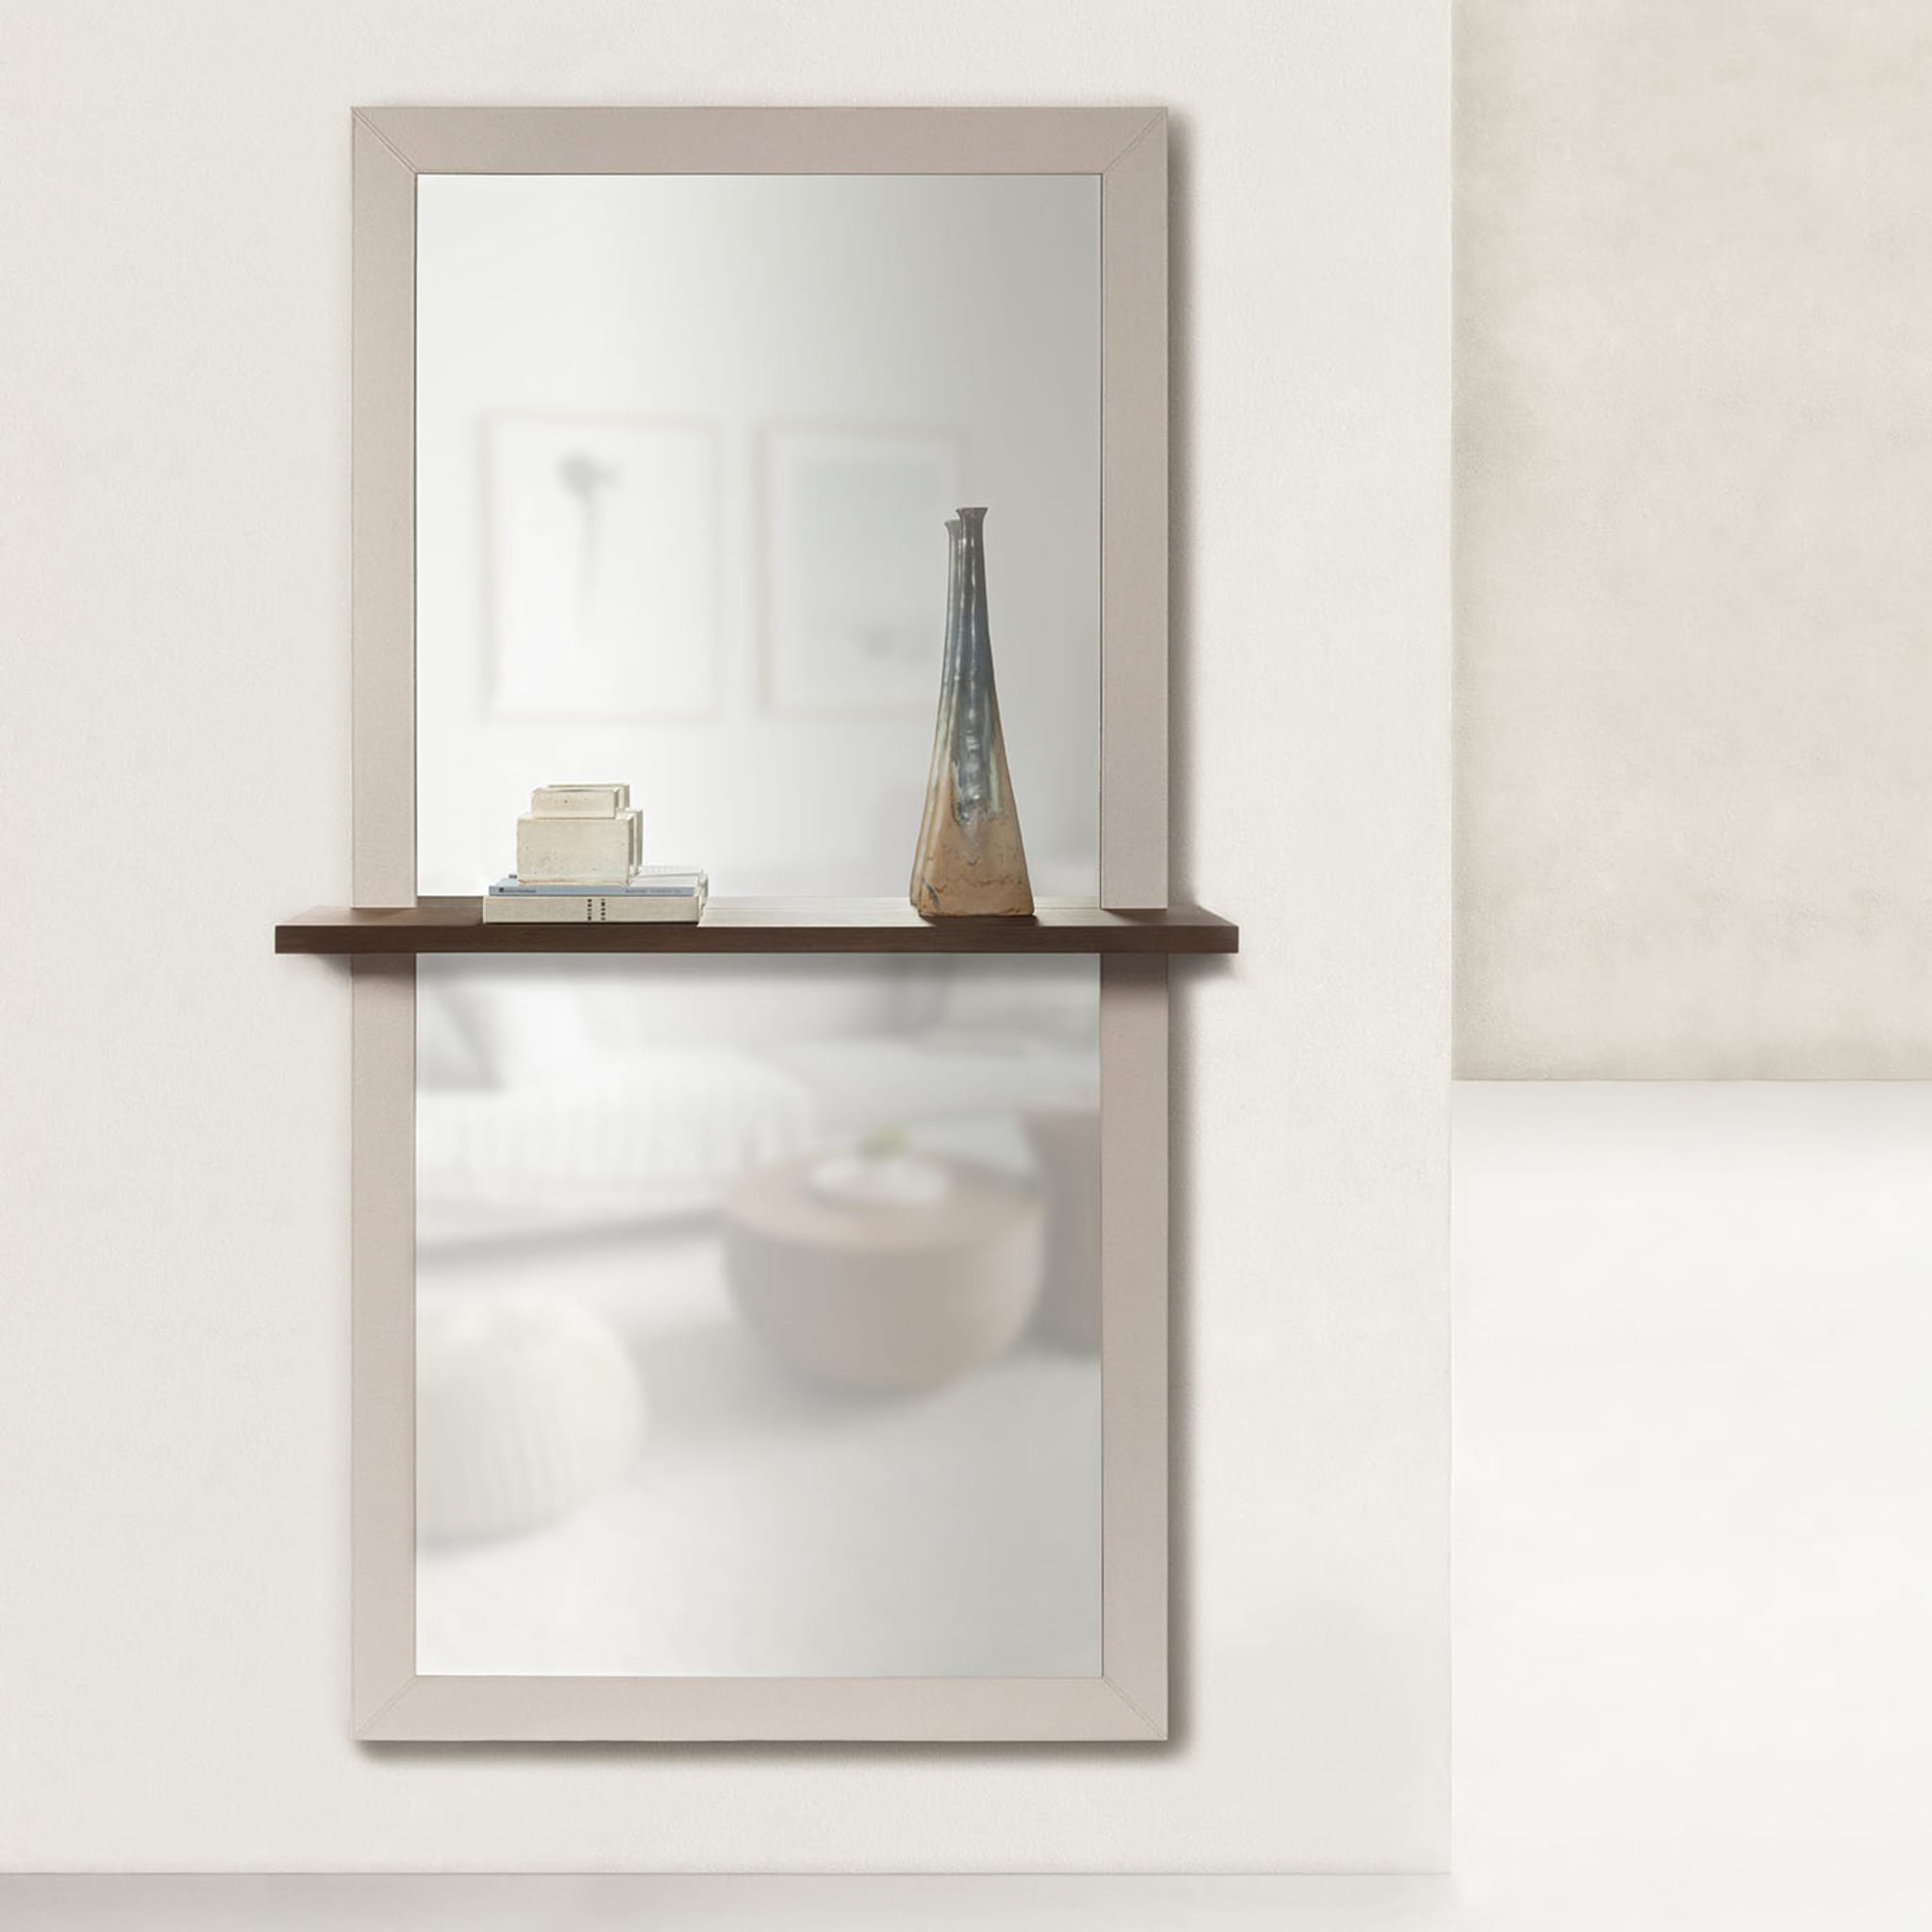 Brame Wall Mirror With Shelf  - Alternative view 2